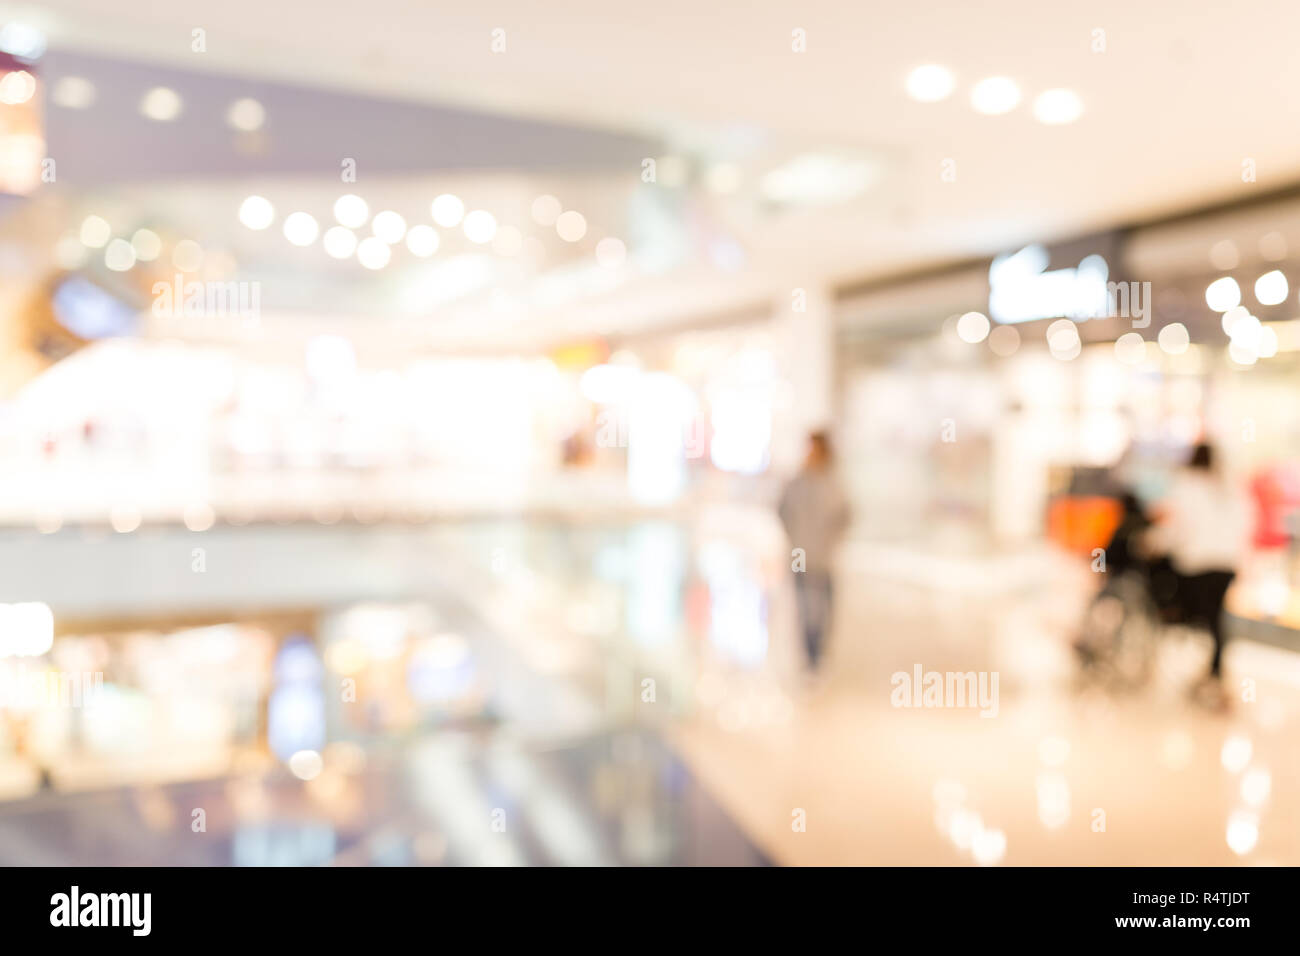 Tìm kiếm hình nền trừu tượng để tôn lên sự độc đáo cho cửa hàng mua sắm của bạn? Hãy xem ảnh để thấy được sự lựa chọn hoàn hảo cho không gian bán hàng của bạn. Những màu sắc và hình ảnh trừu tượng sẽ mang đến nét độc đáo và quyến rũ cho không gian của bạn.